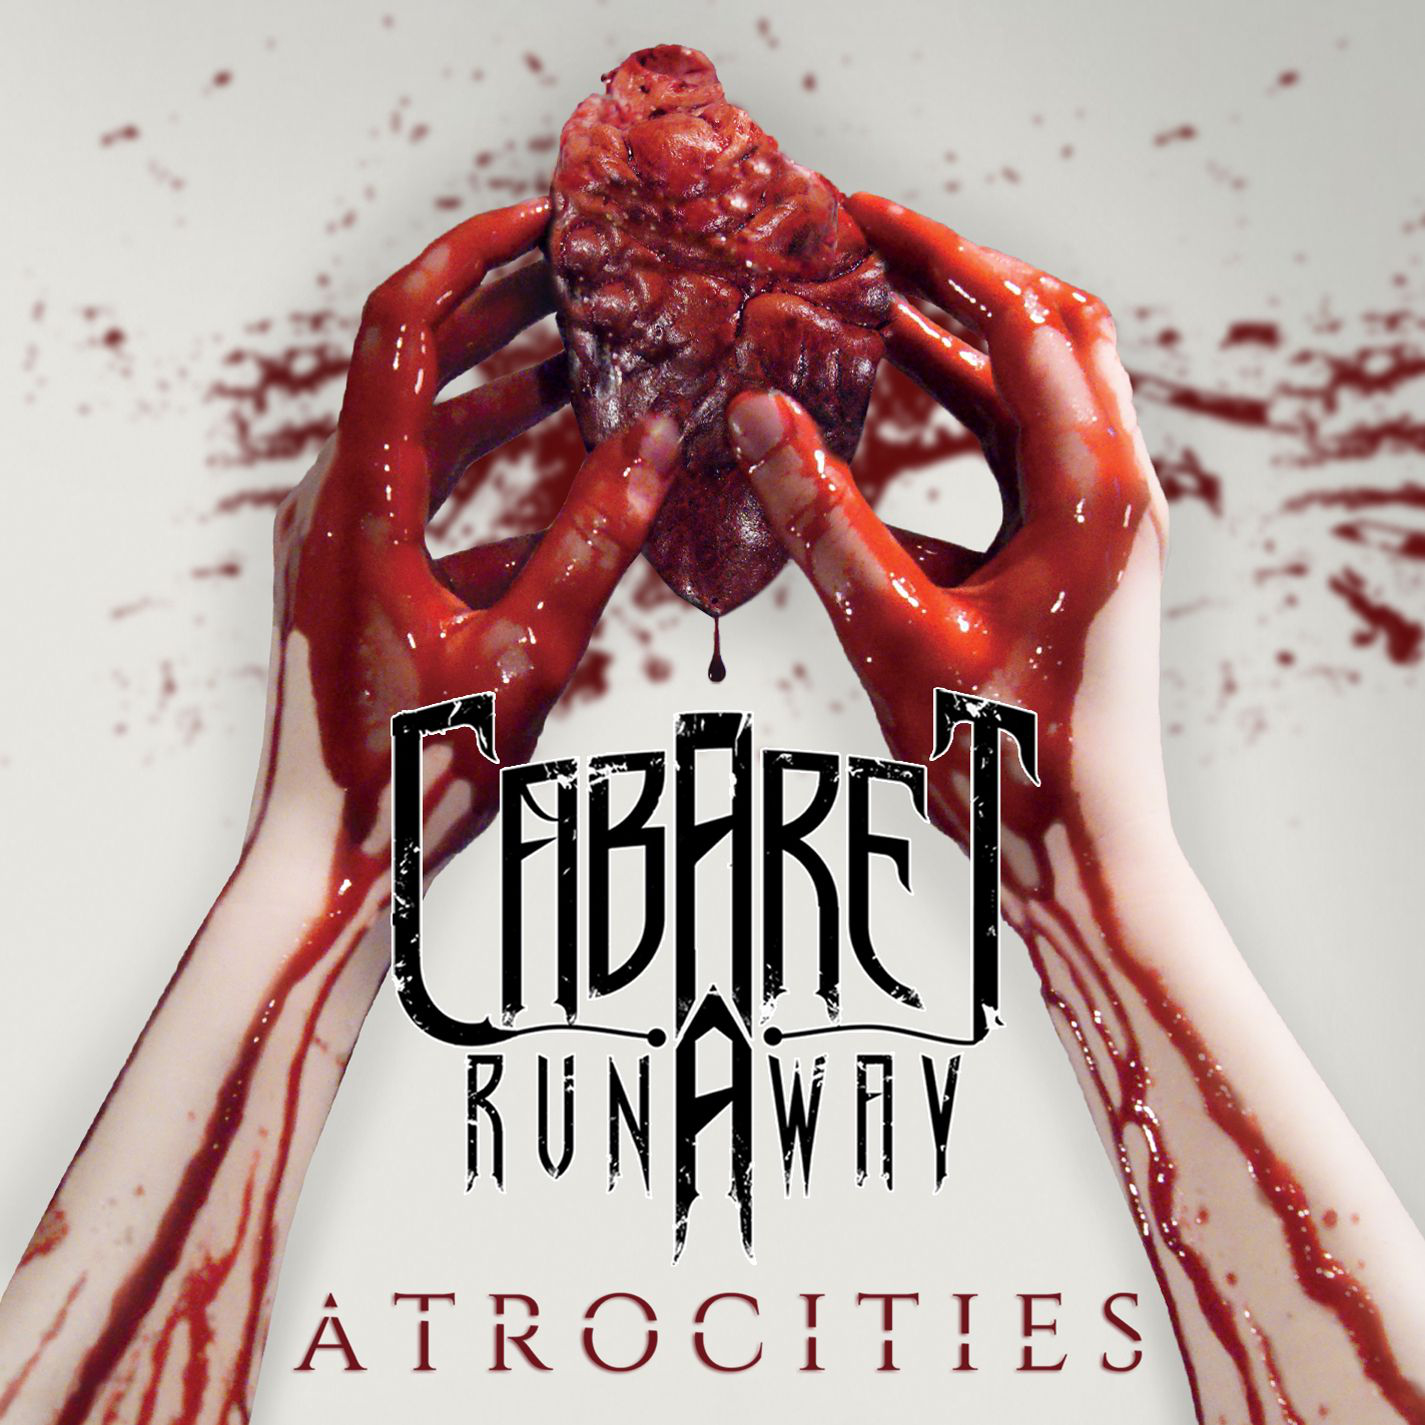 Cabaret Runaway - Atrocities (2015) Album Info